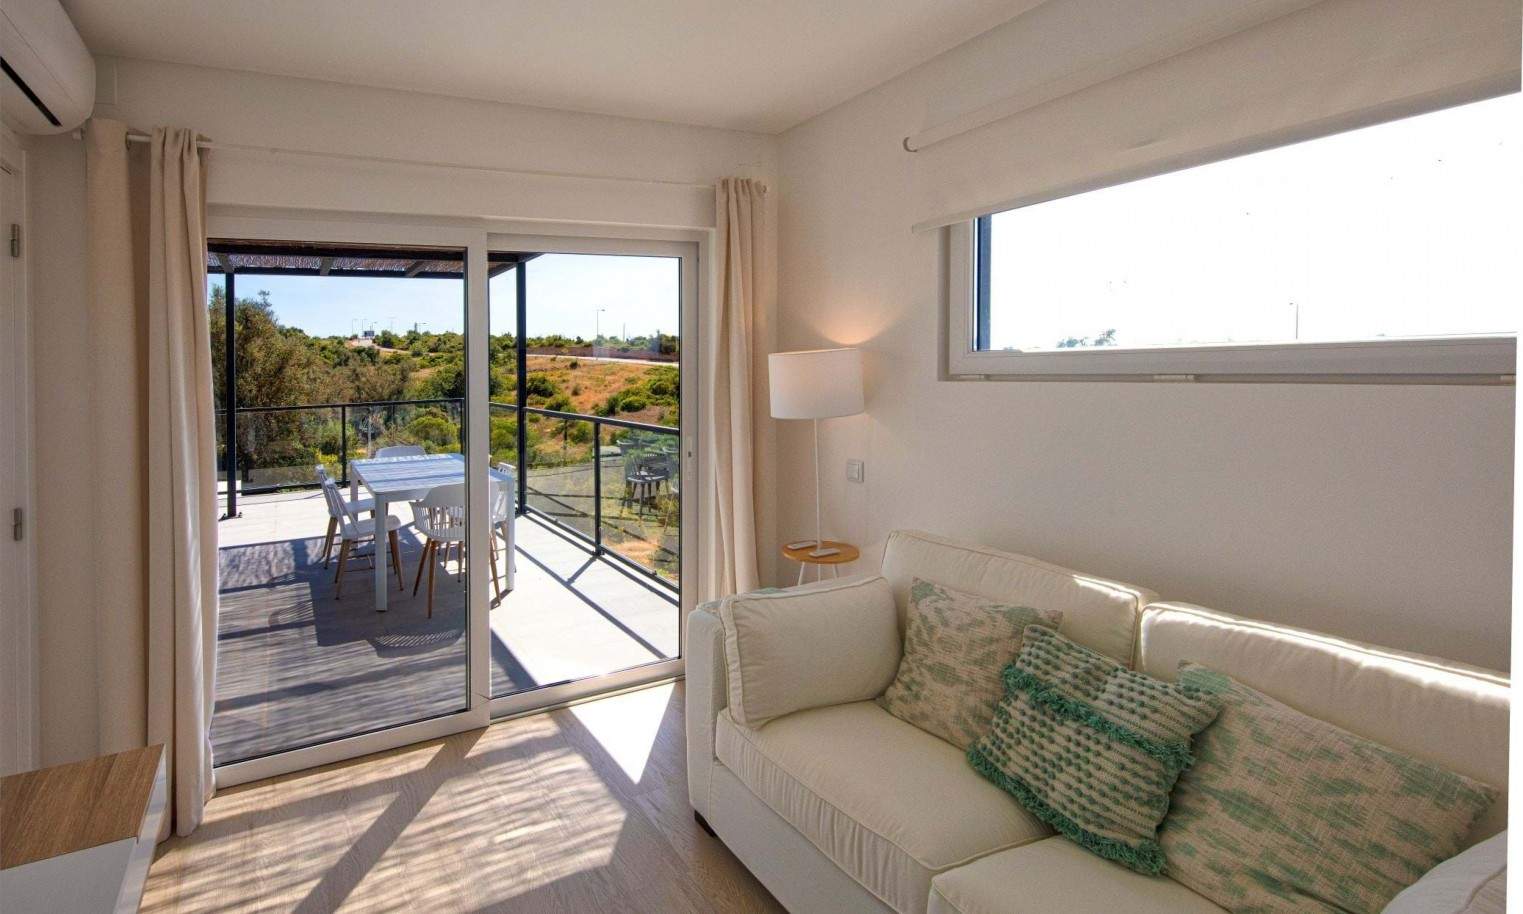 Moradia T2+1 em resort, para venda em Carvoeiro, Algarve_206839